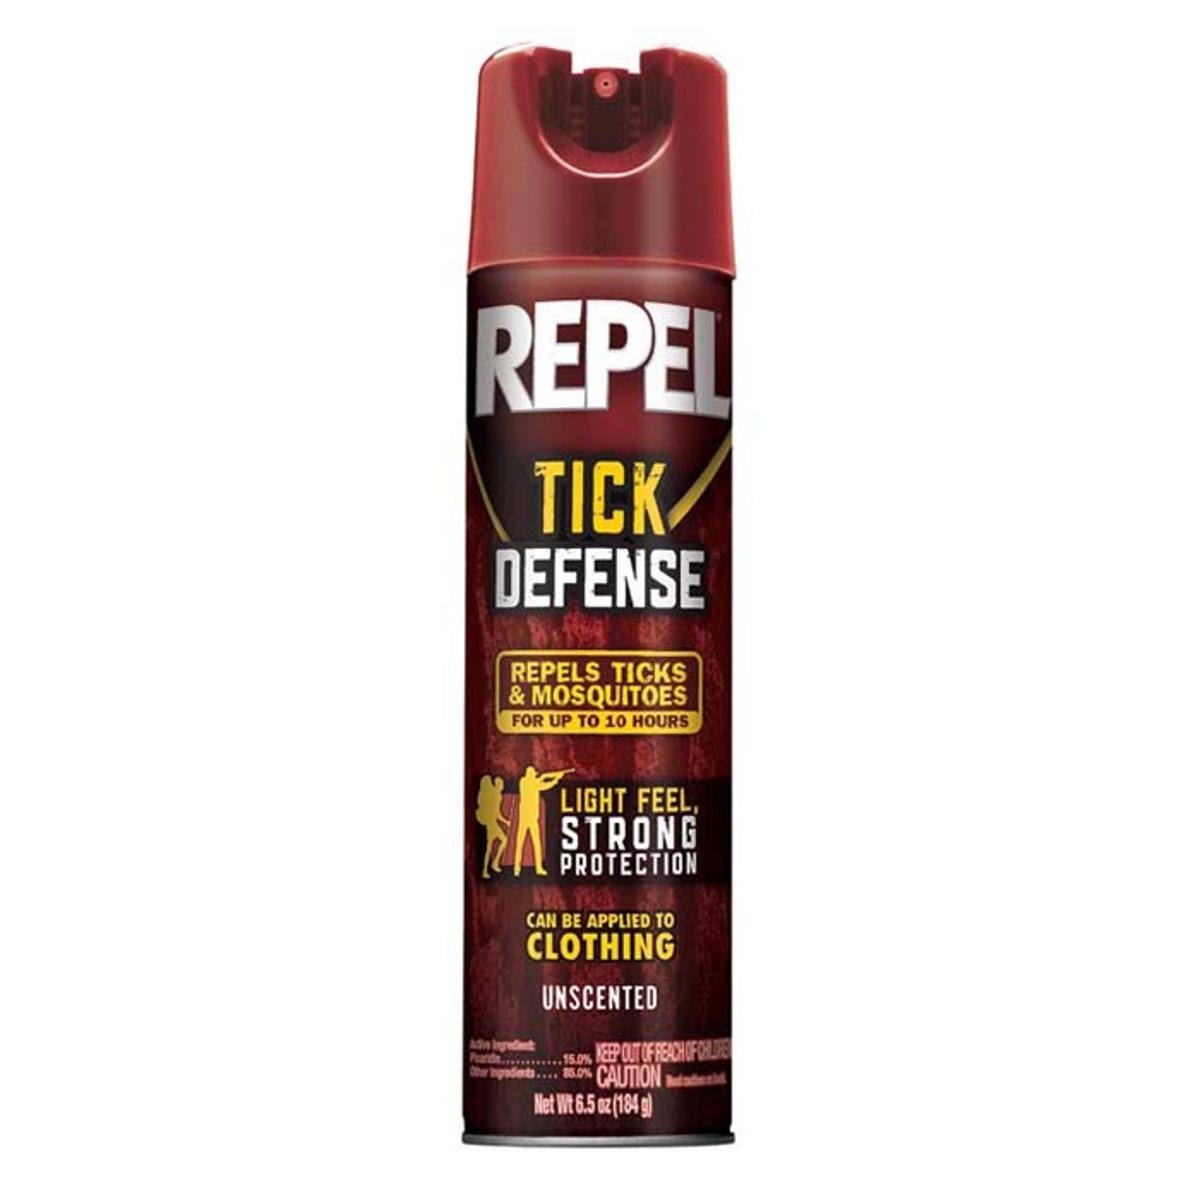 Repel Tick Defense - 184g